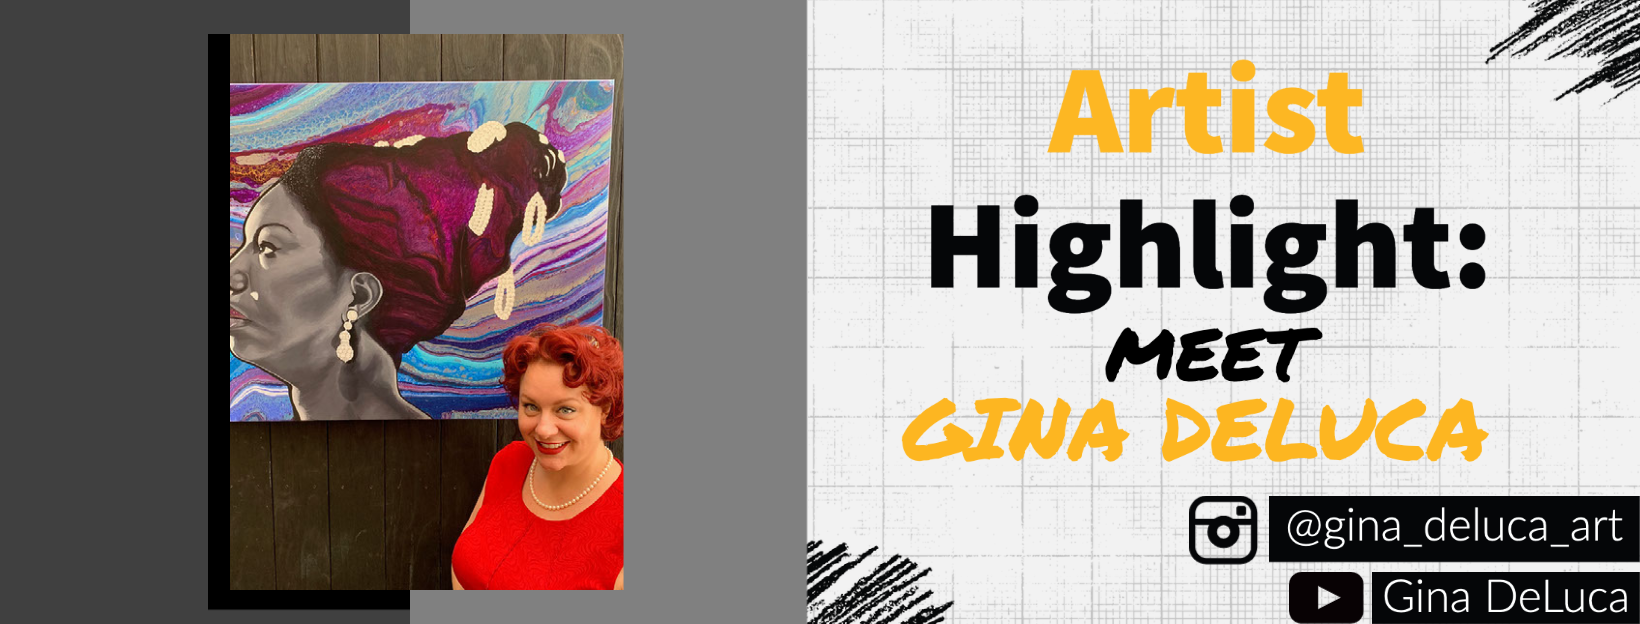 Artist Highlight - Gina DeLuca